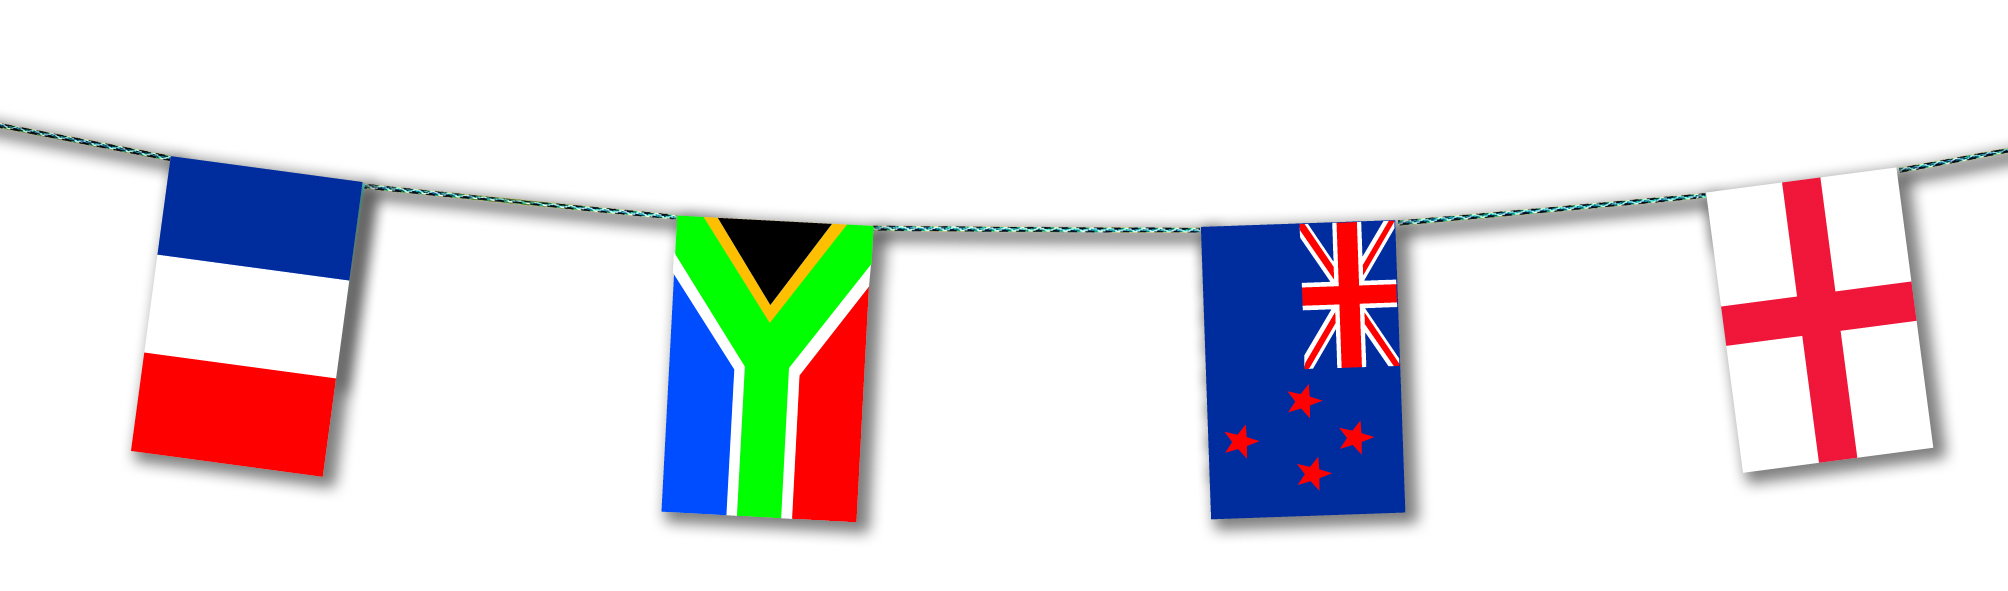 Guirlande drapeaux pays participants coupe du monde rugby 2019 en plastique